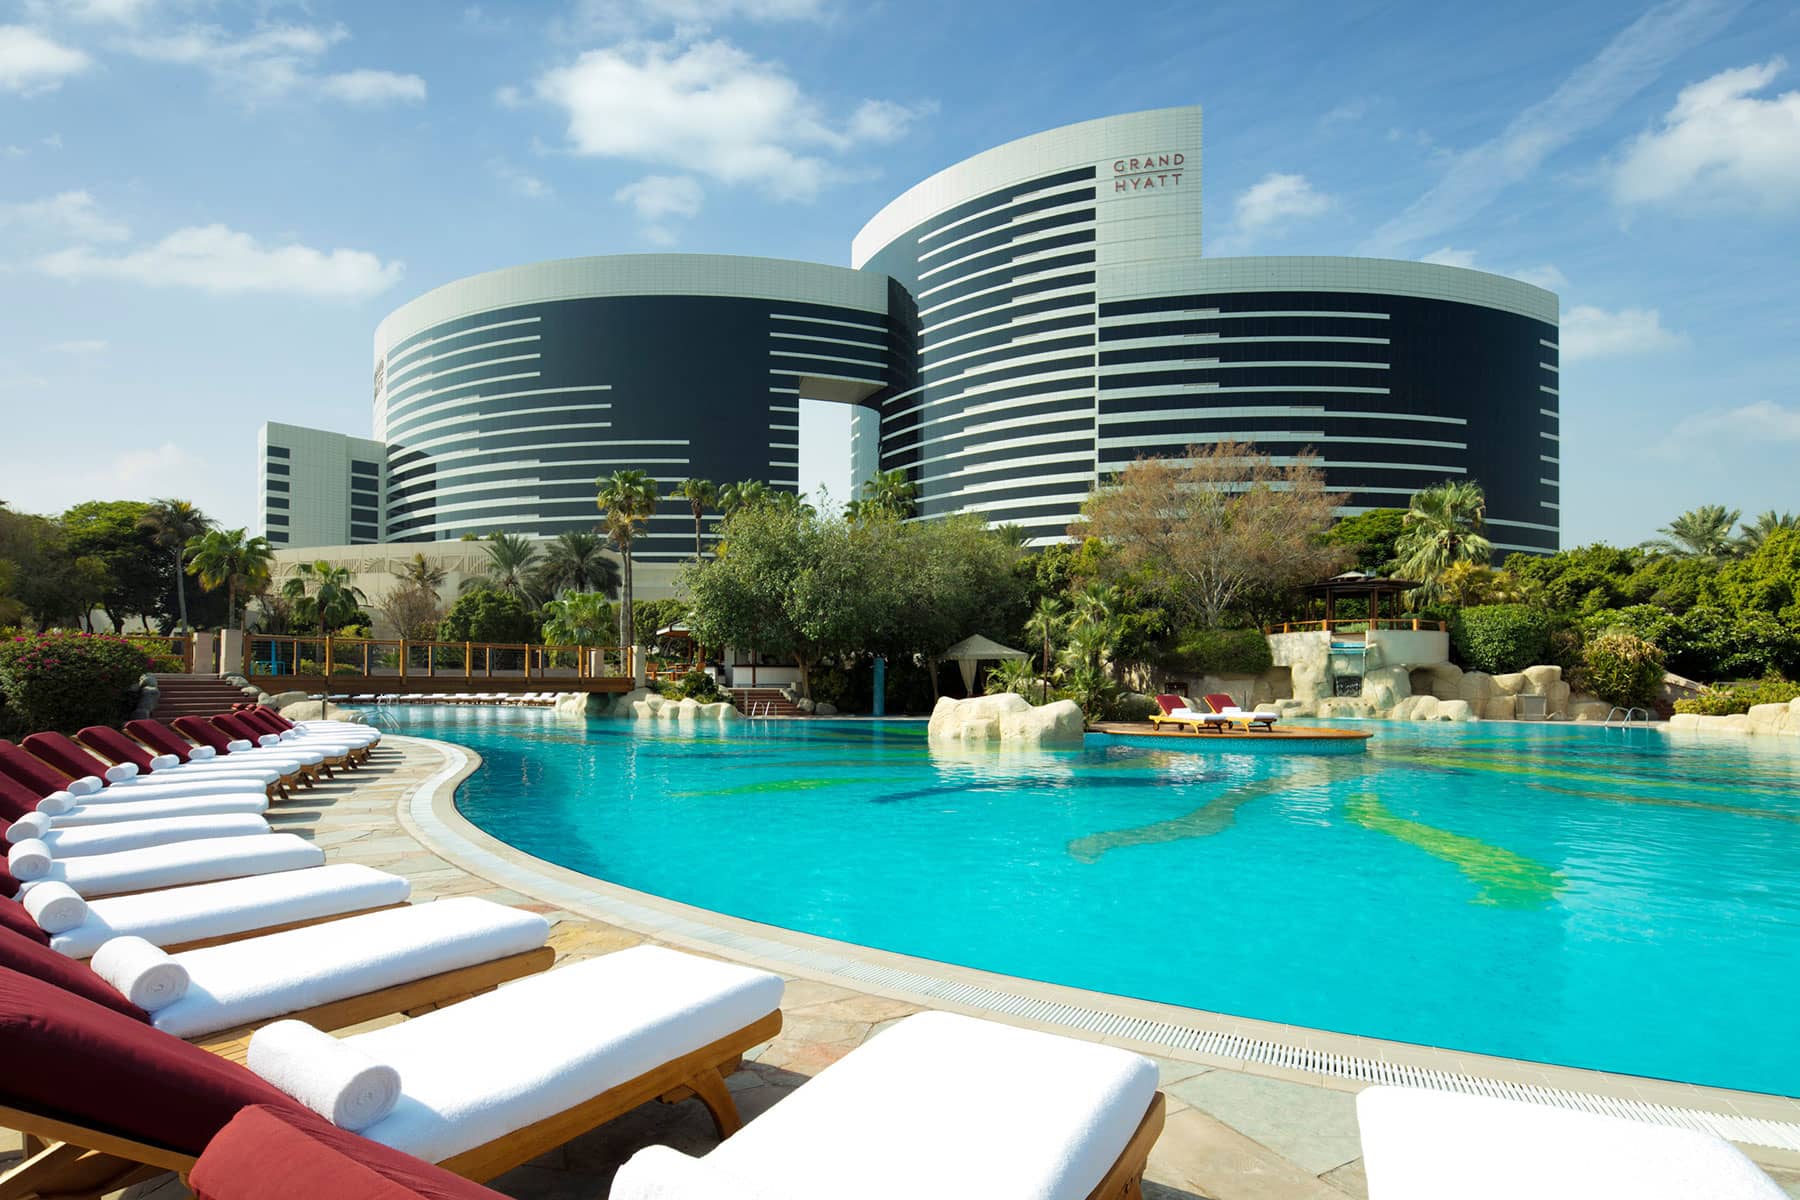 Hotel & Resort Photography: Grand Hyatt Dubai